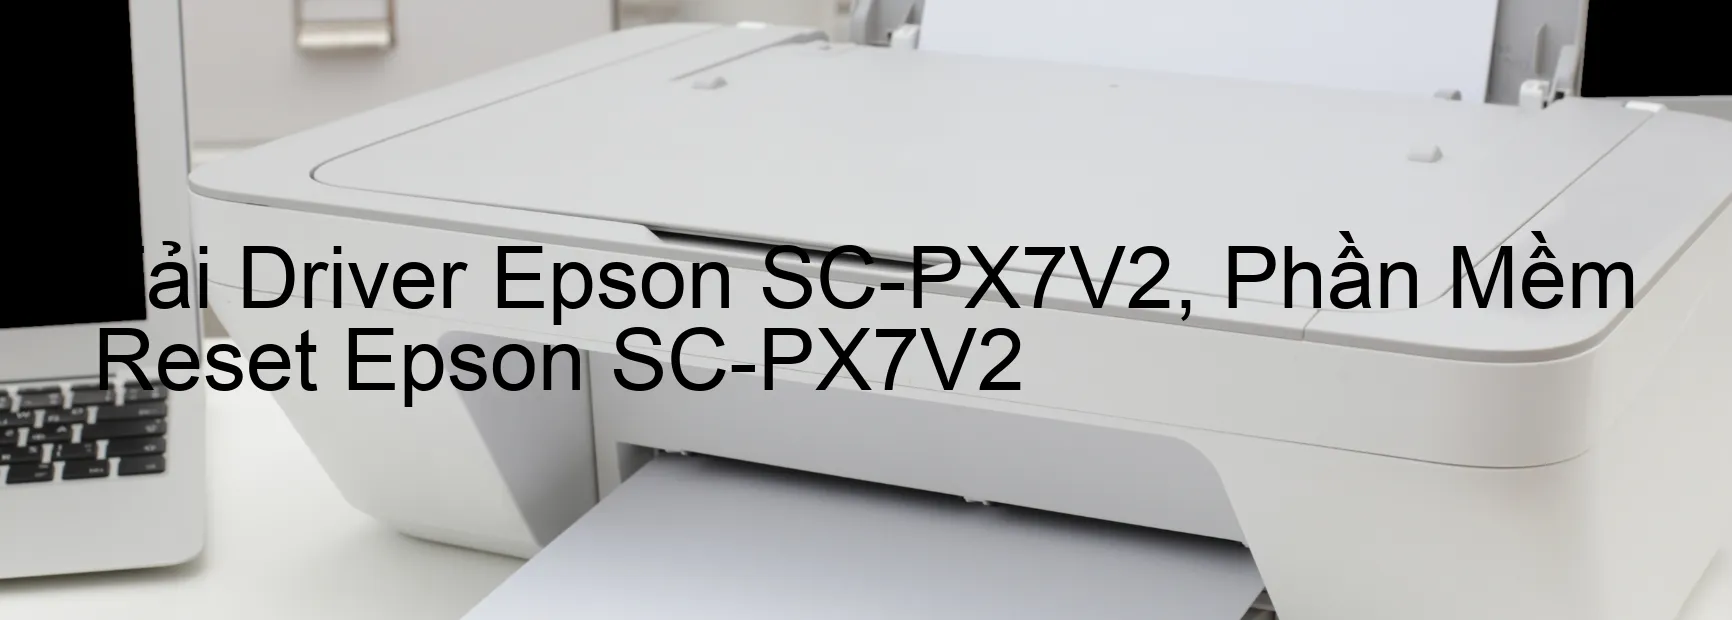 Driver Epson SC-PX7V2, Phần Mềm Reset Epson SC-PX7V2